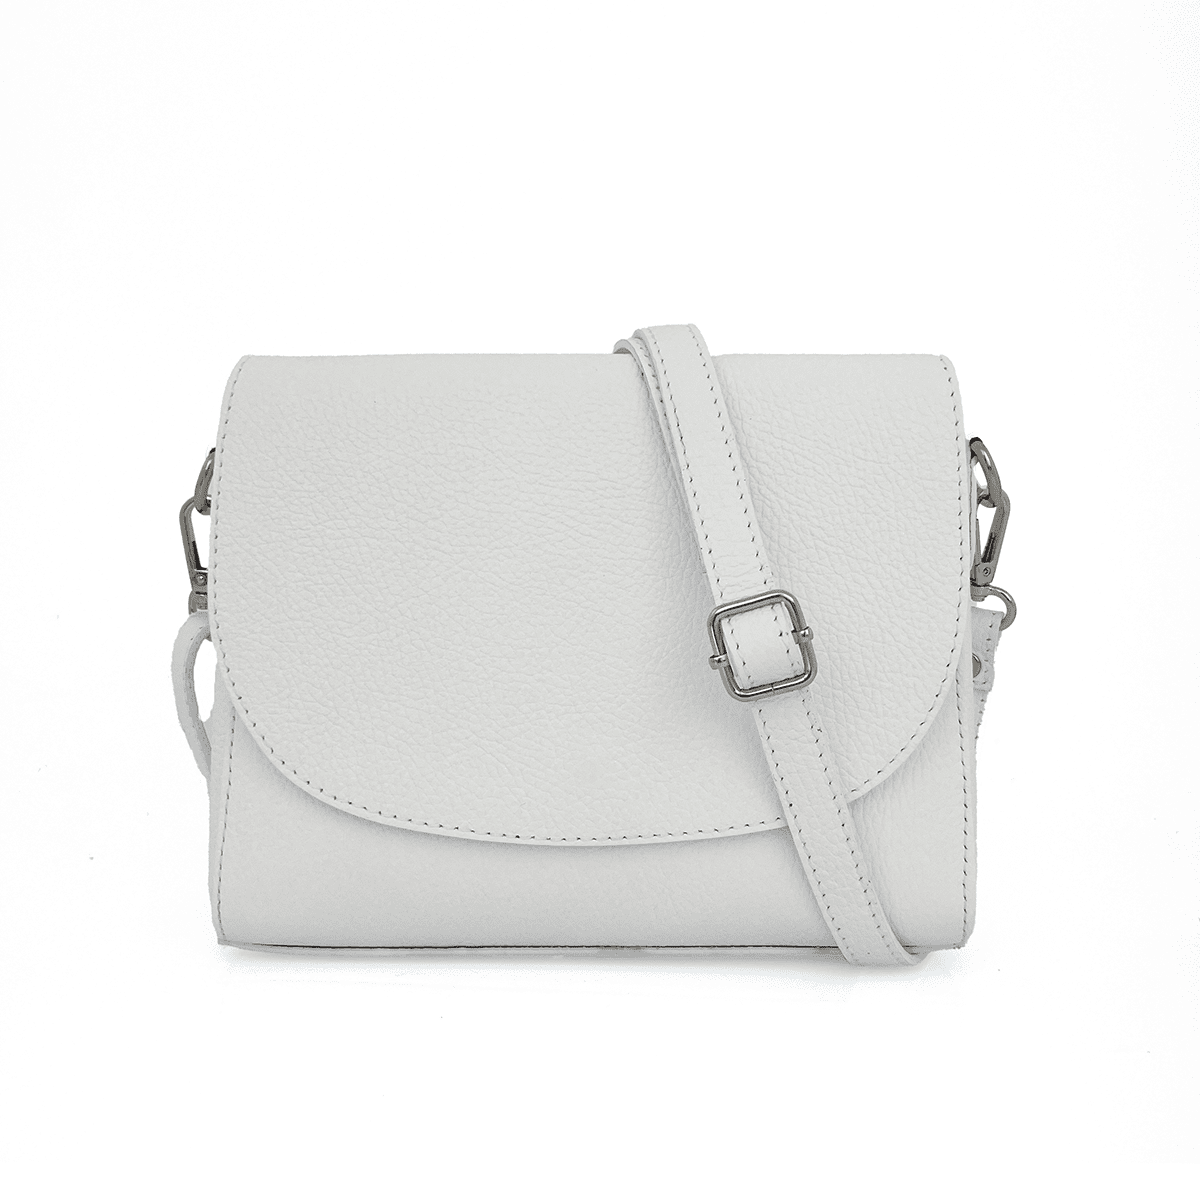 Чанта за през рамо от естествена кожа Milana - бяла